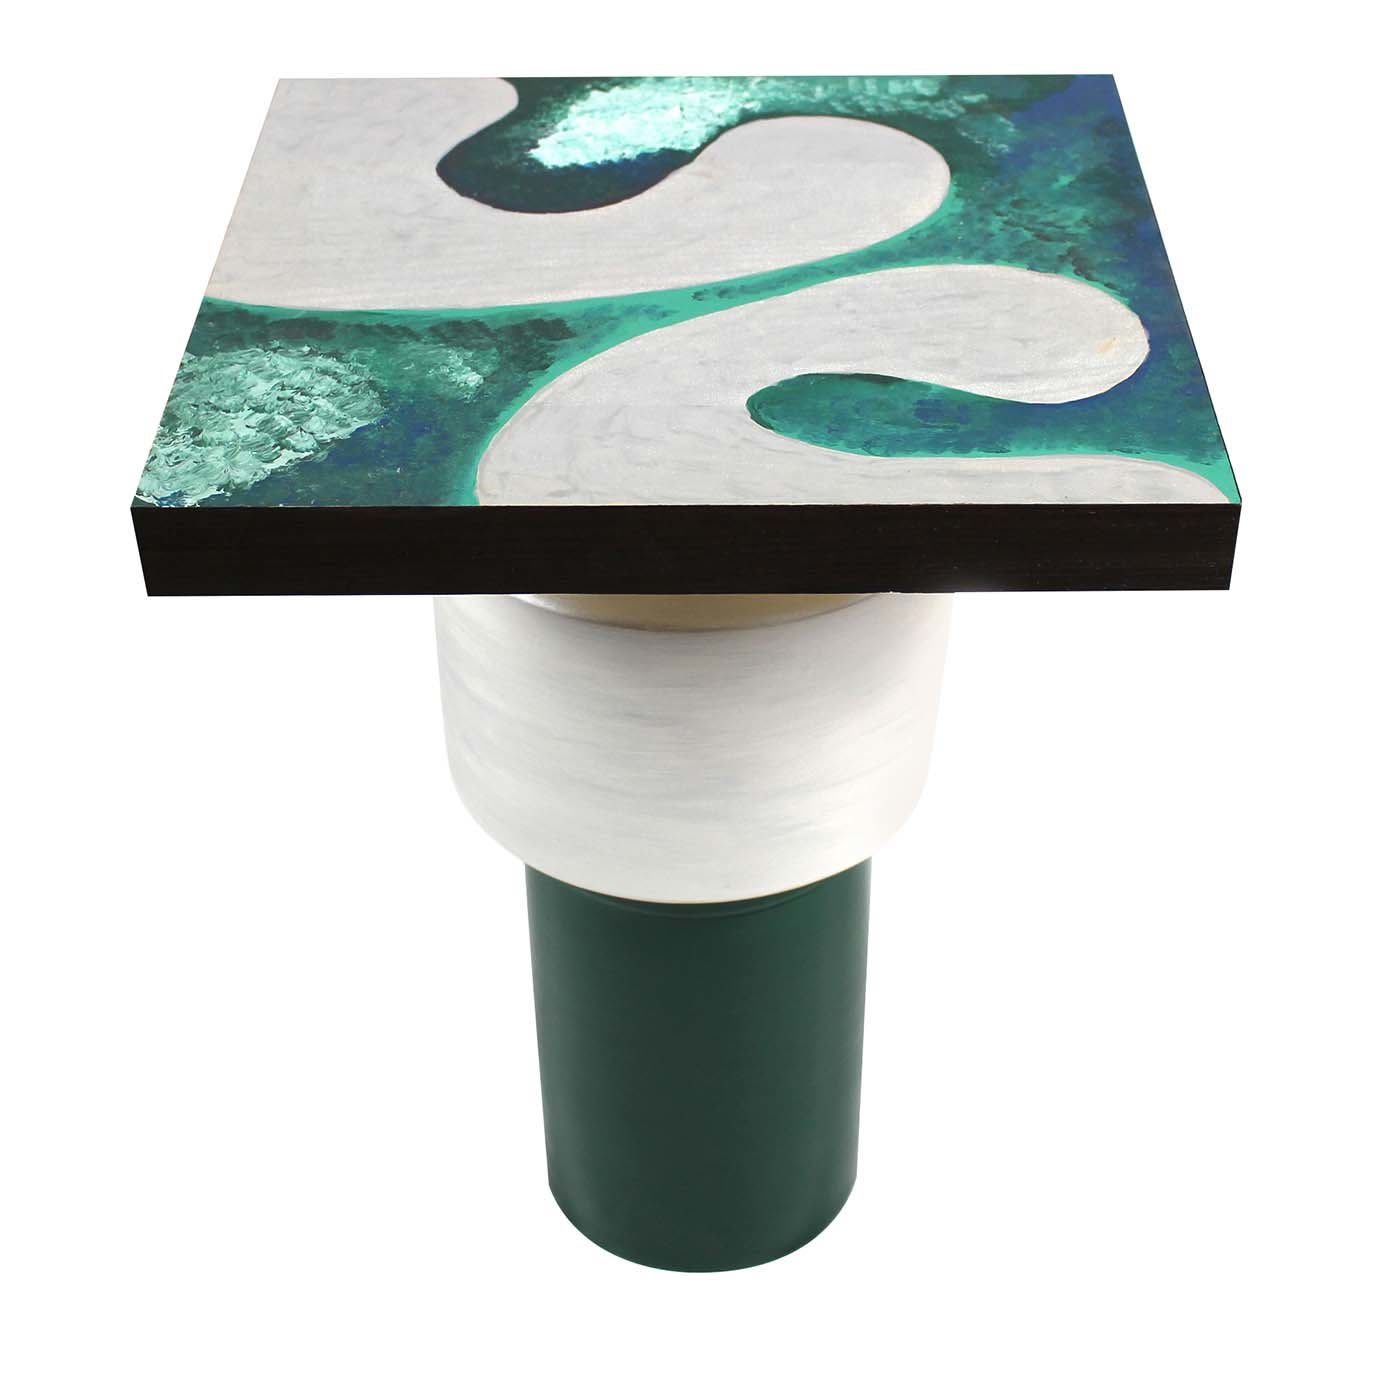 S3 Coffee Table by Mascia Meccani - Meccani Design